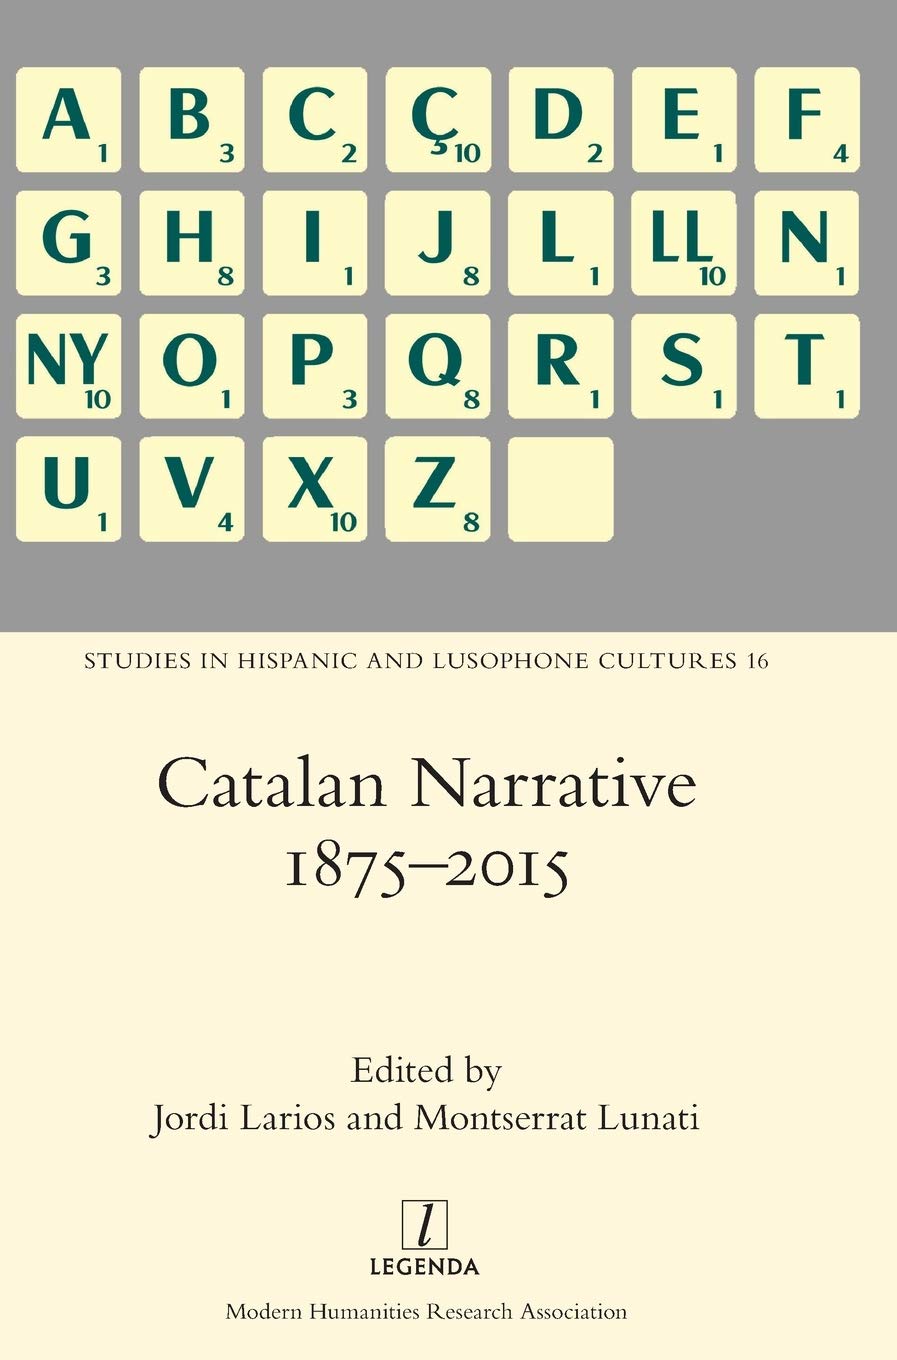 Imagen de portada del libro Catalan Narrative 1875-2015